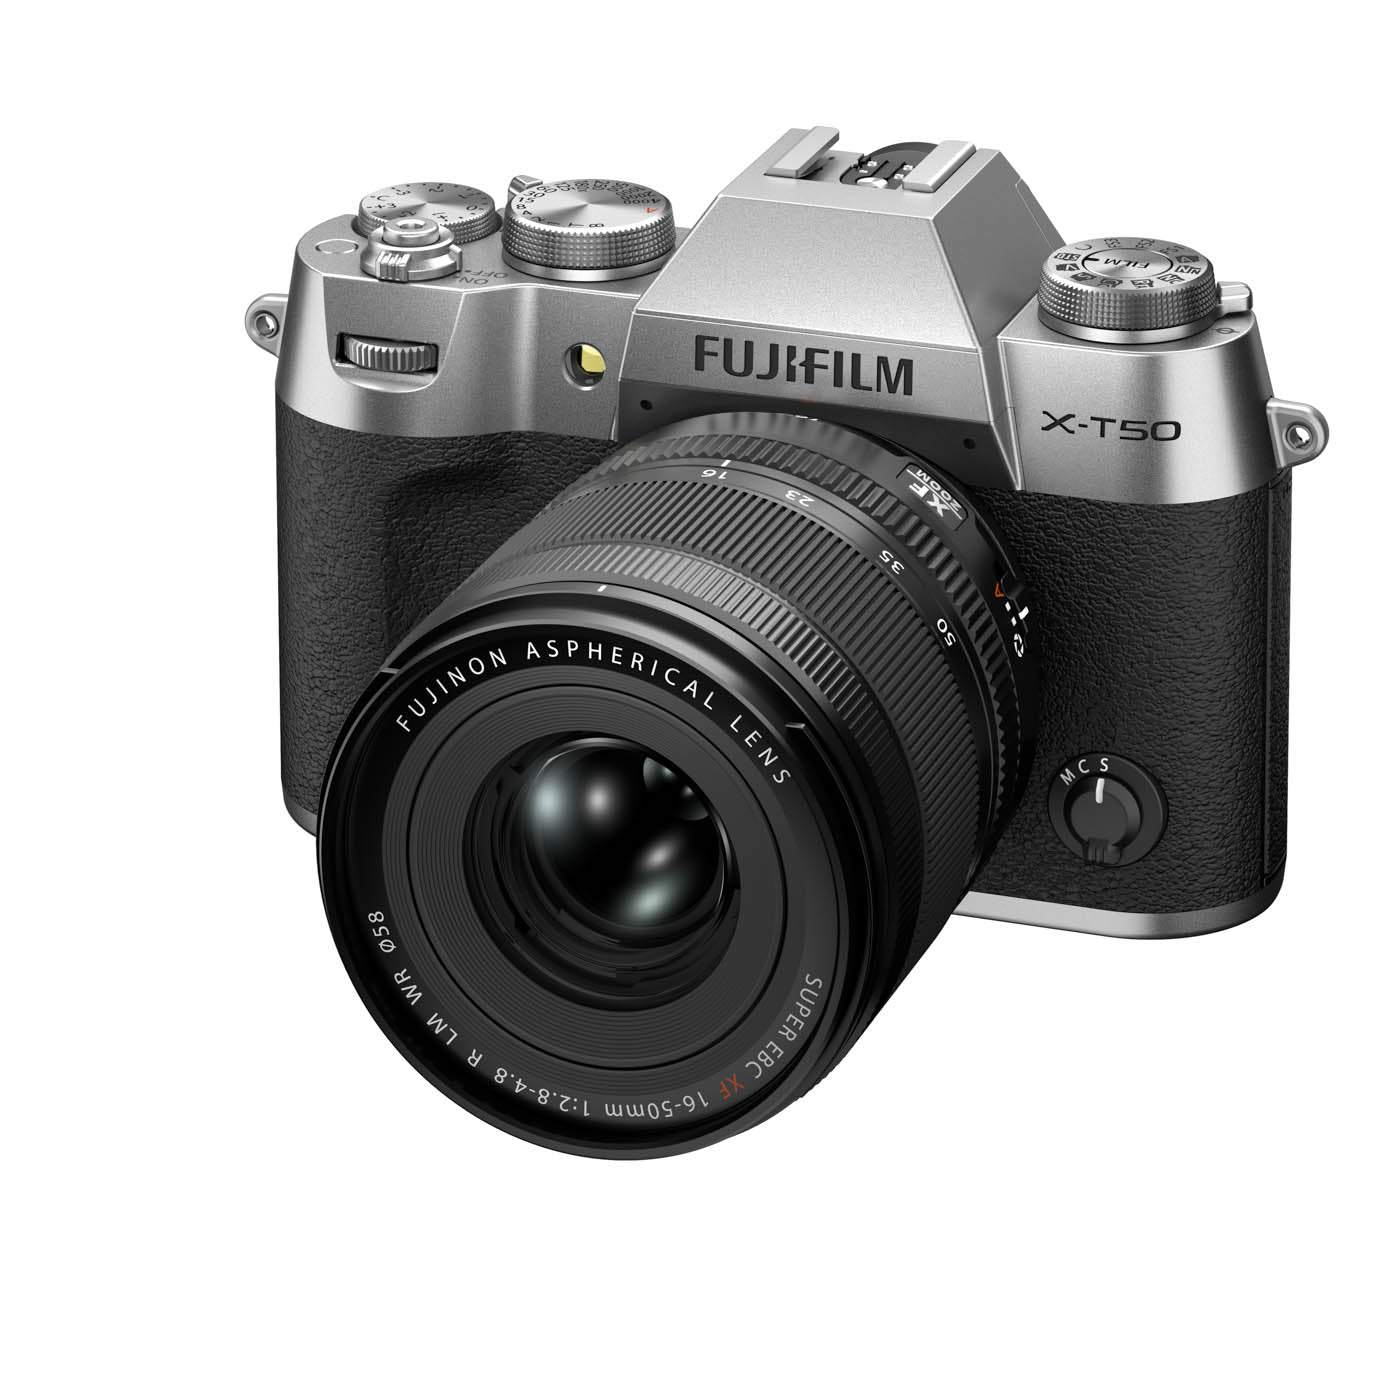 Fujifilm X-T50 Camera with XF 16-50mm F2.8-4.8 R LM WR Lens - Silver